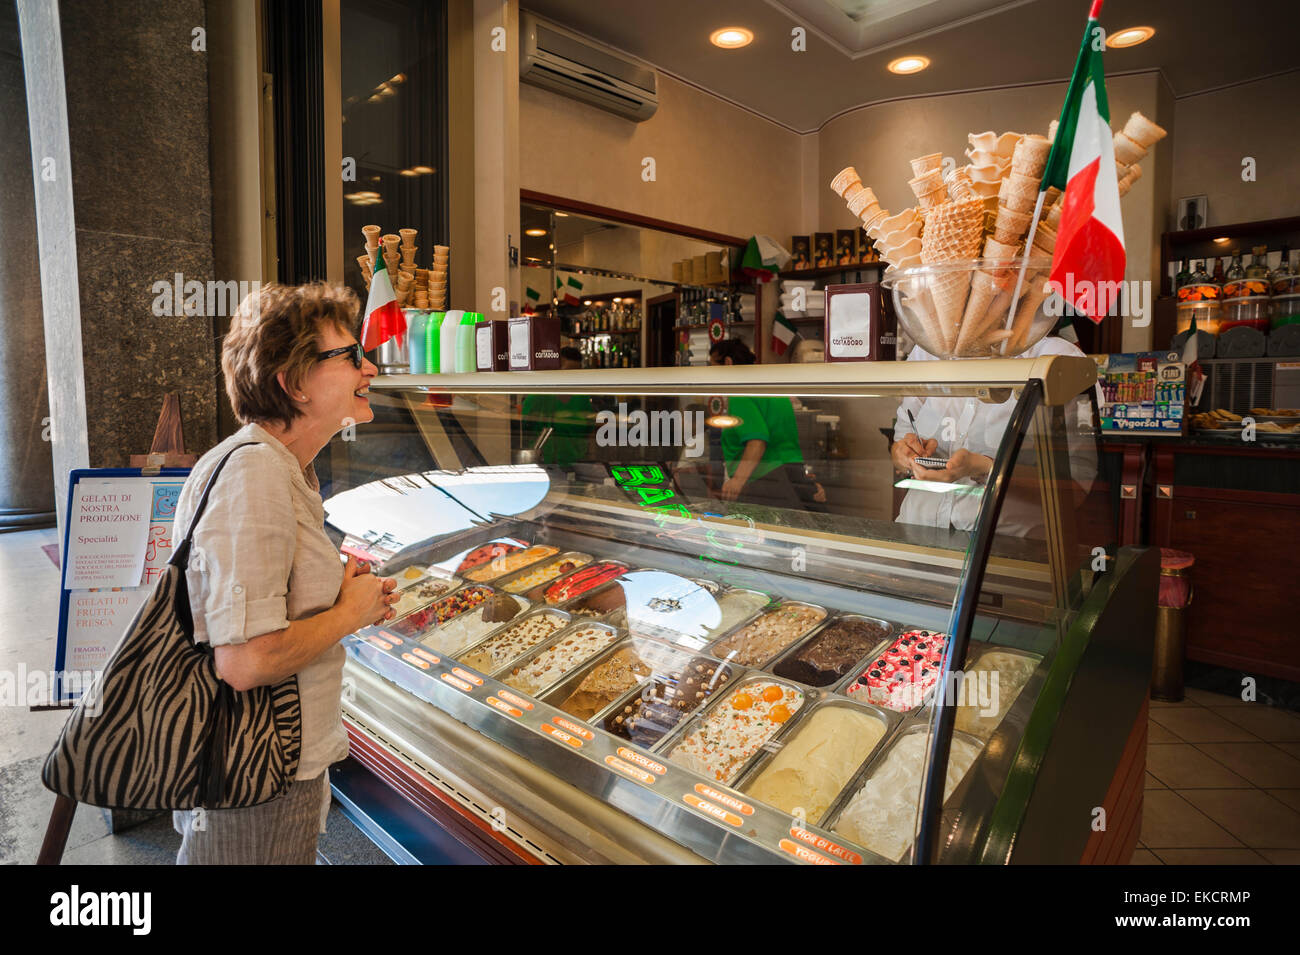 Italie La crème glacée, un visiteur de la Piazza San Carlo dans le centre de Turin achète une glace à une gelateria, Turin, Piémont, Italie. Banque D'Images